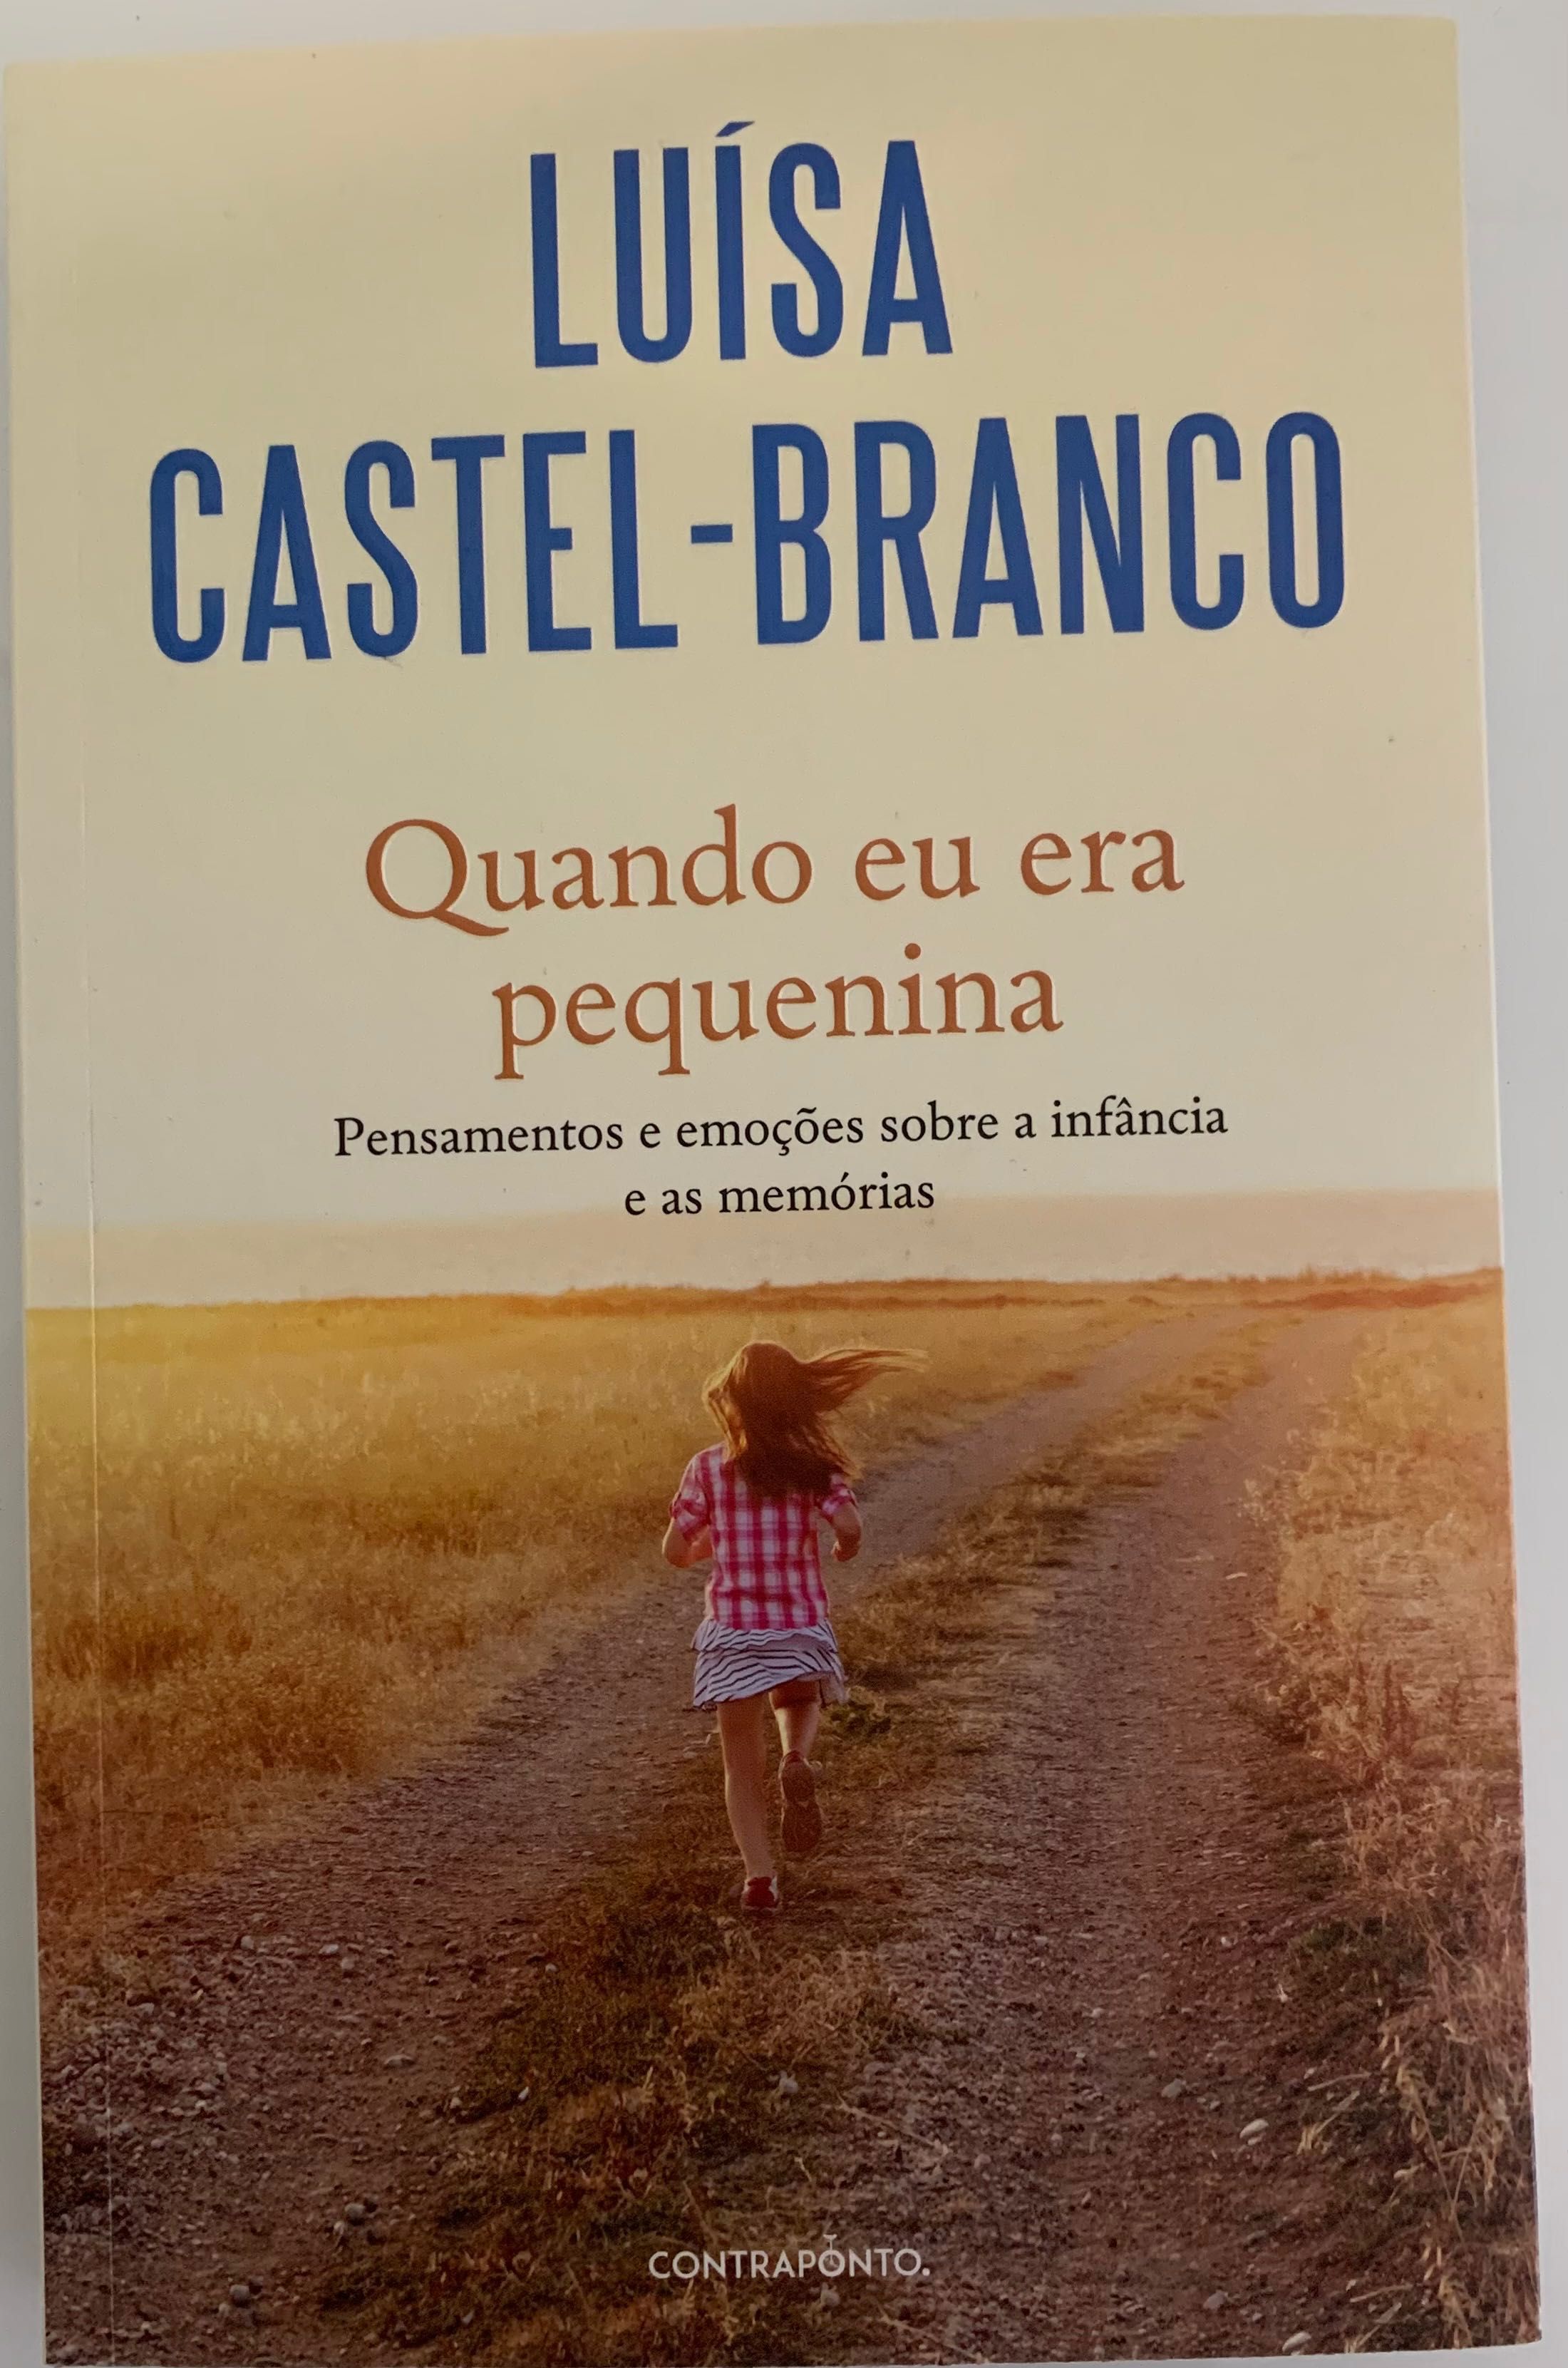 Livro “Quando eu era pequenina” - Luísa Castel-Branco